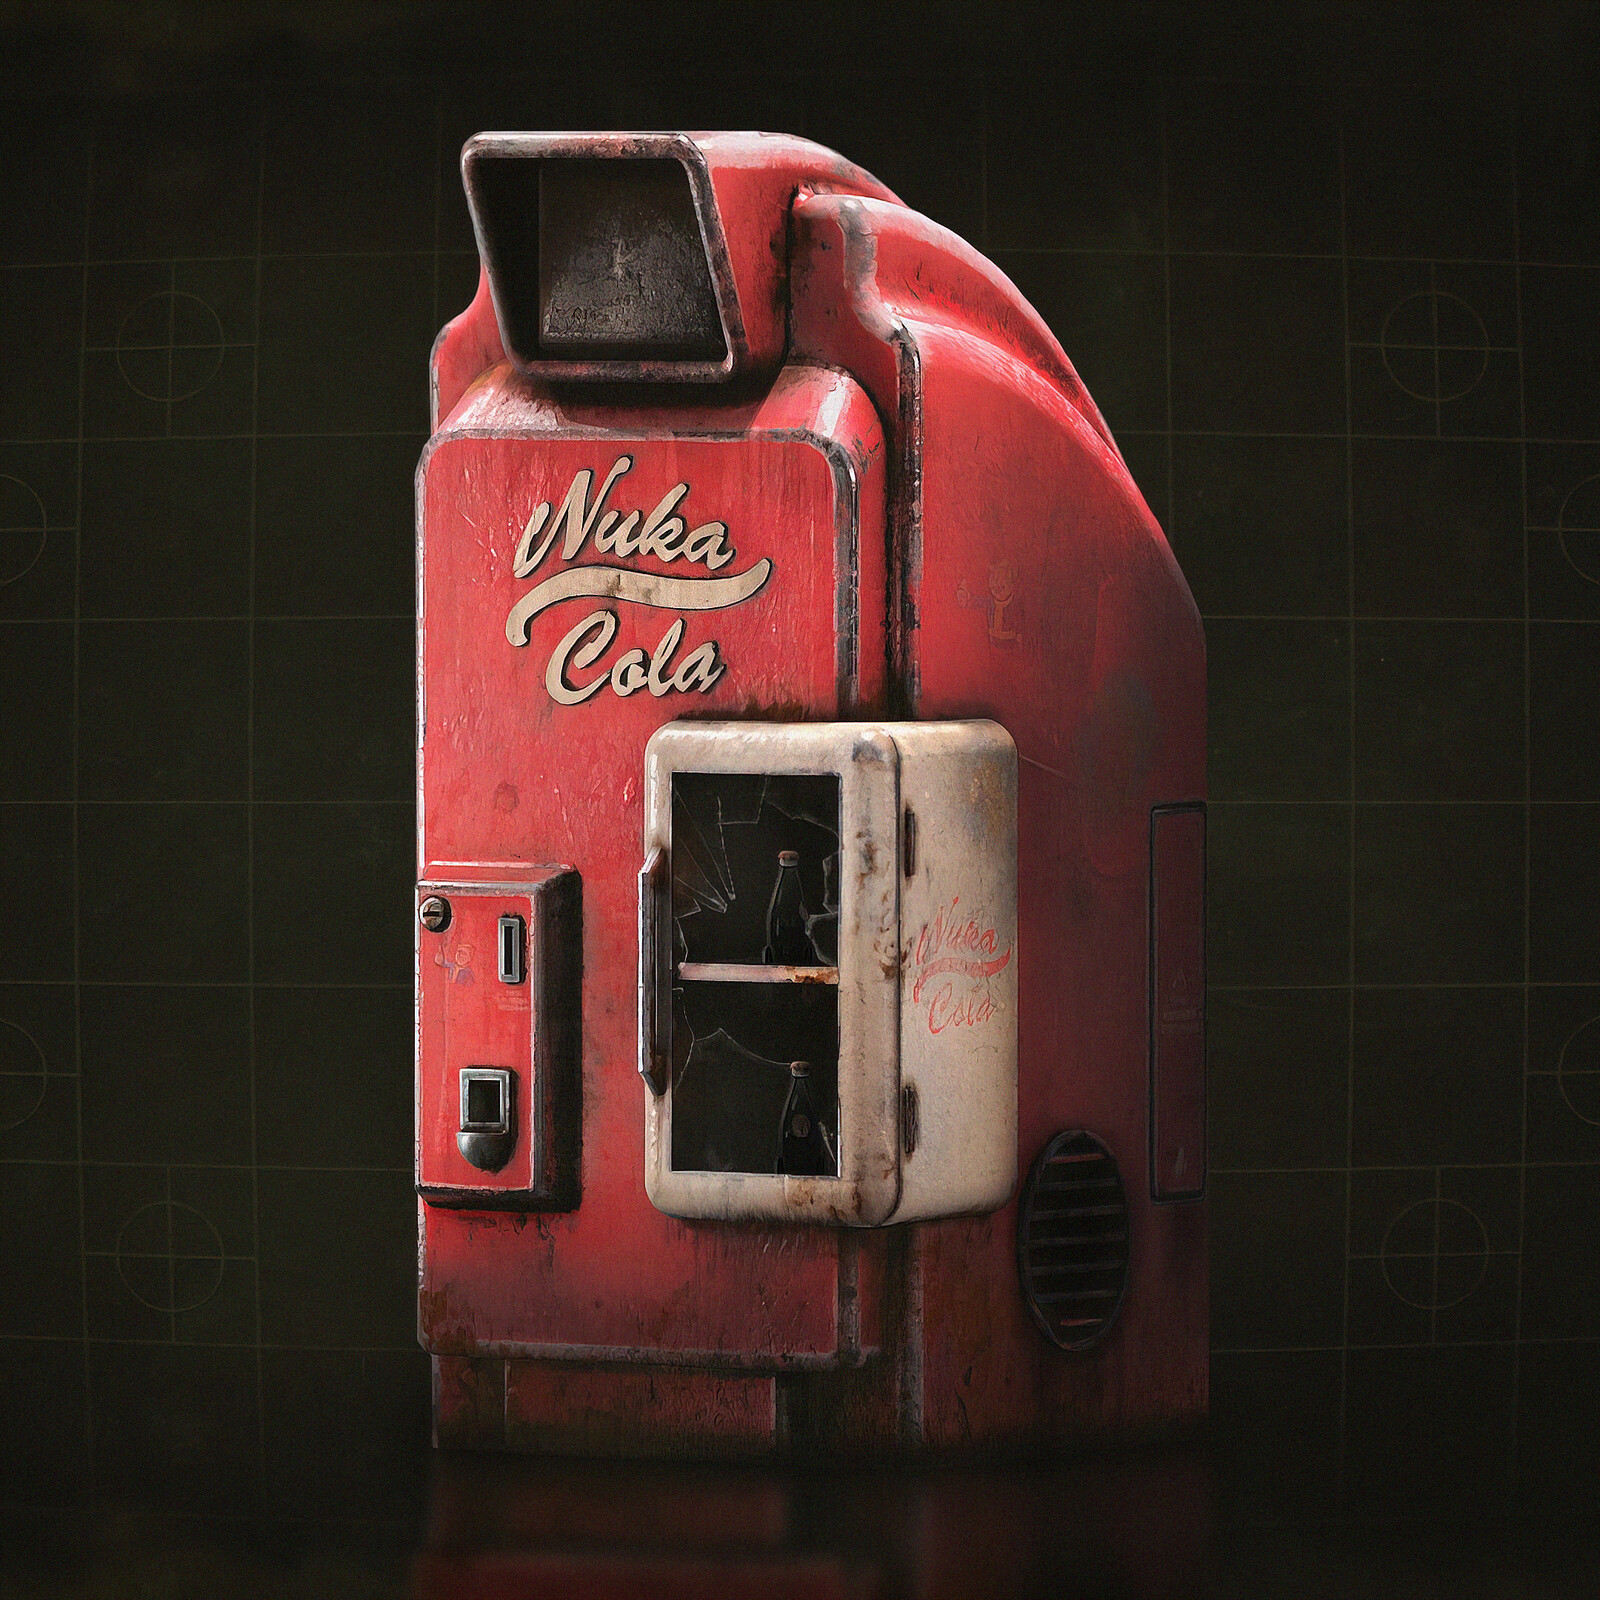 Fallout 4 завод по розливу ядер колы как запустить генератор фото 46